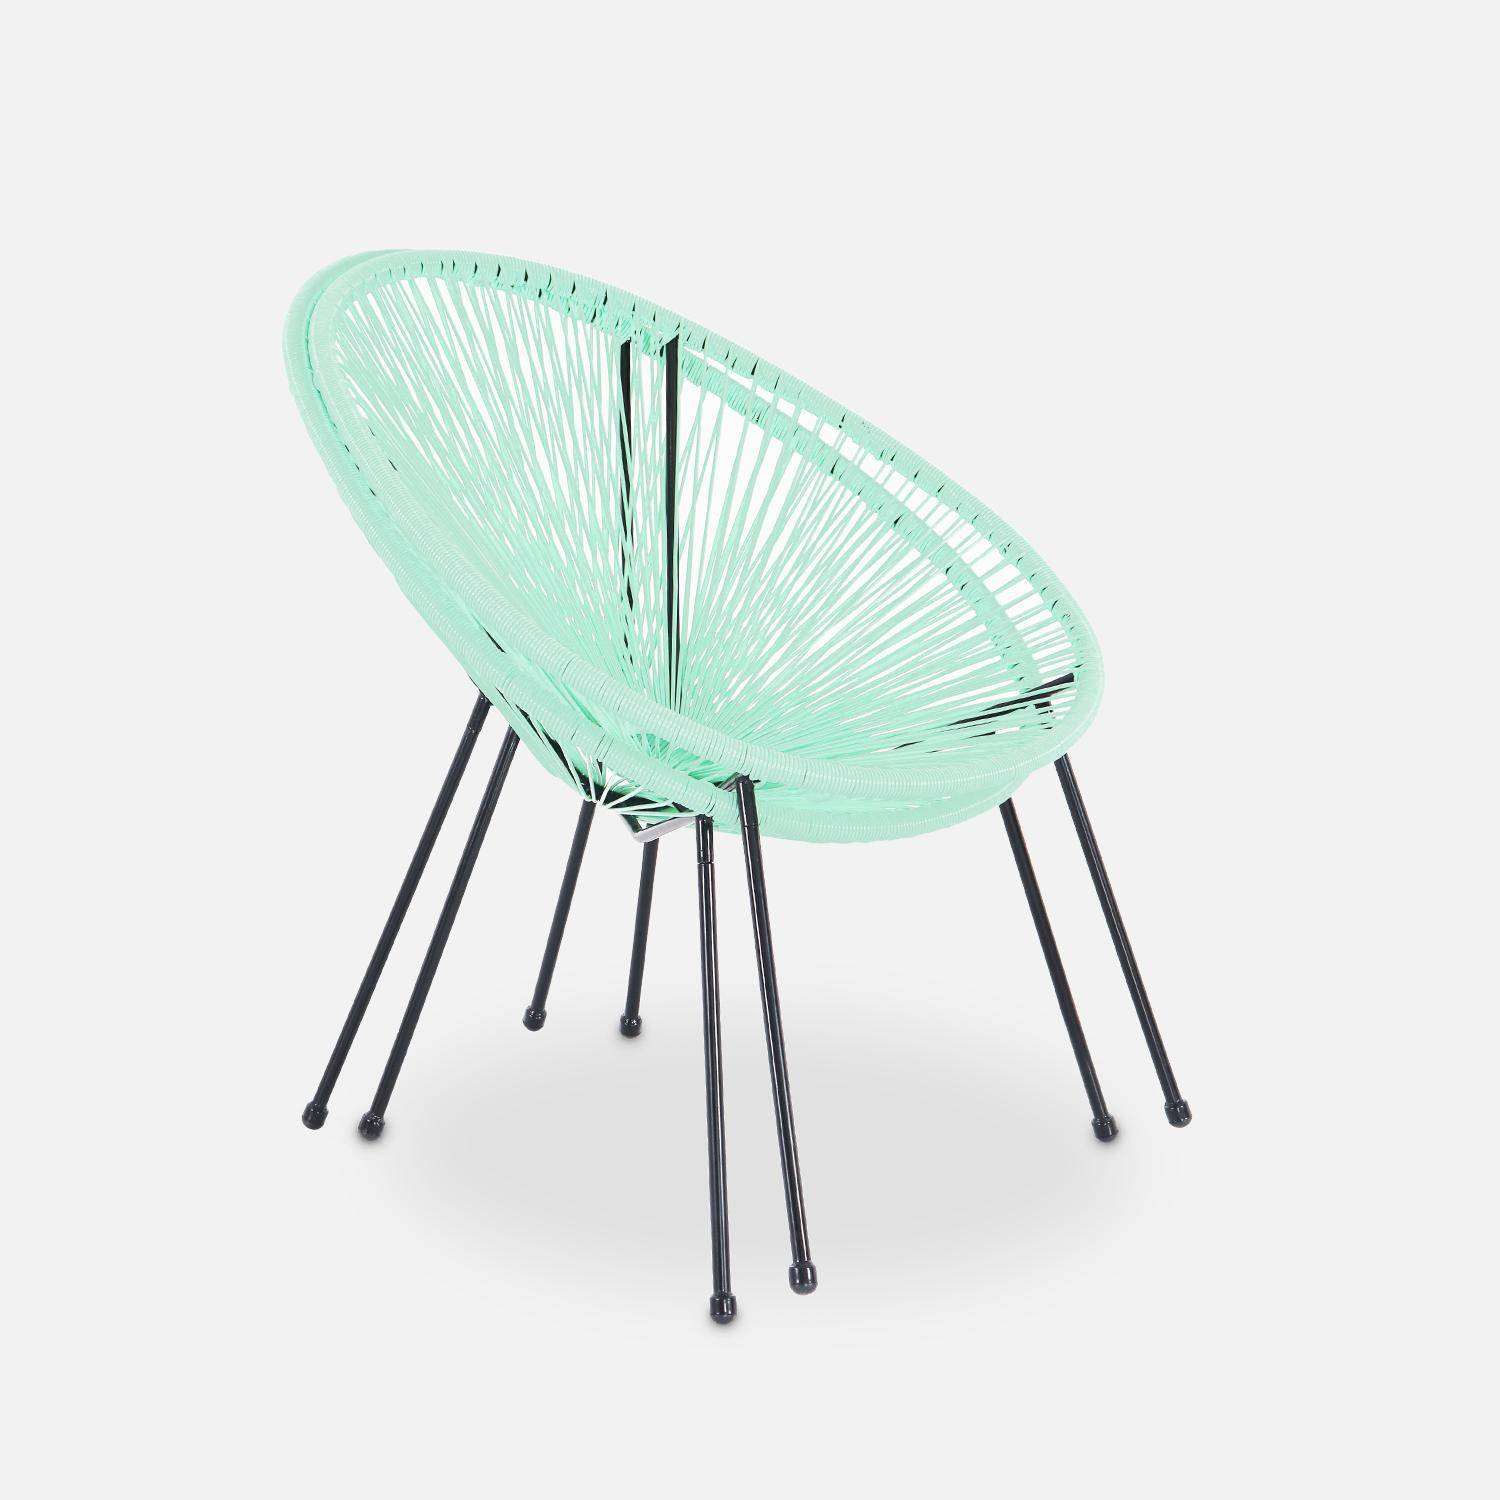 Lot de 2 fauteuils design Oeuf - Acapulco vert d'eau - Fauteuils 4 pieds design rétro, cordage plastique, intérieur / extérieur Photo5